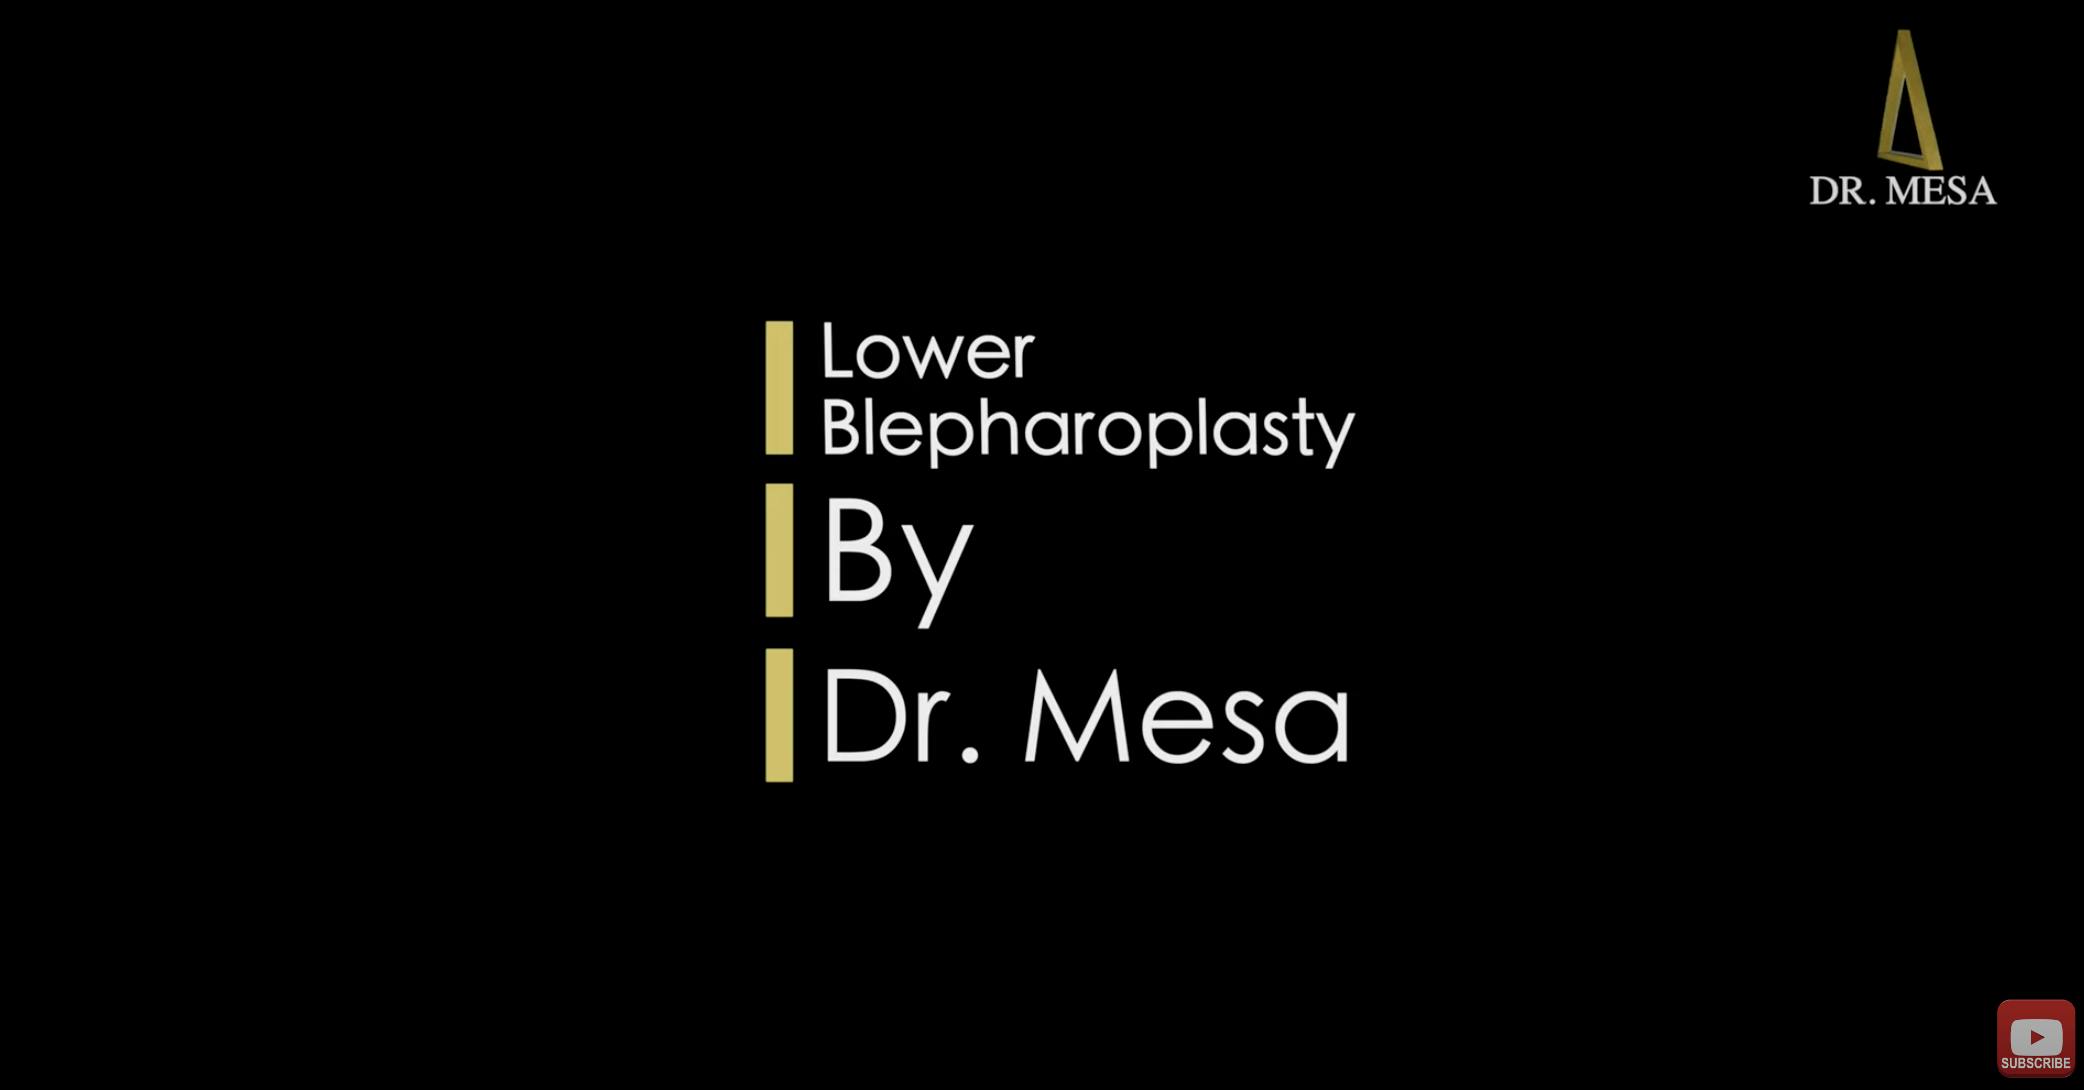 Dr. Mesa